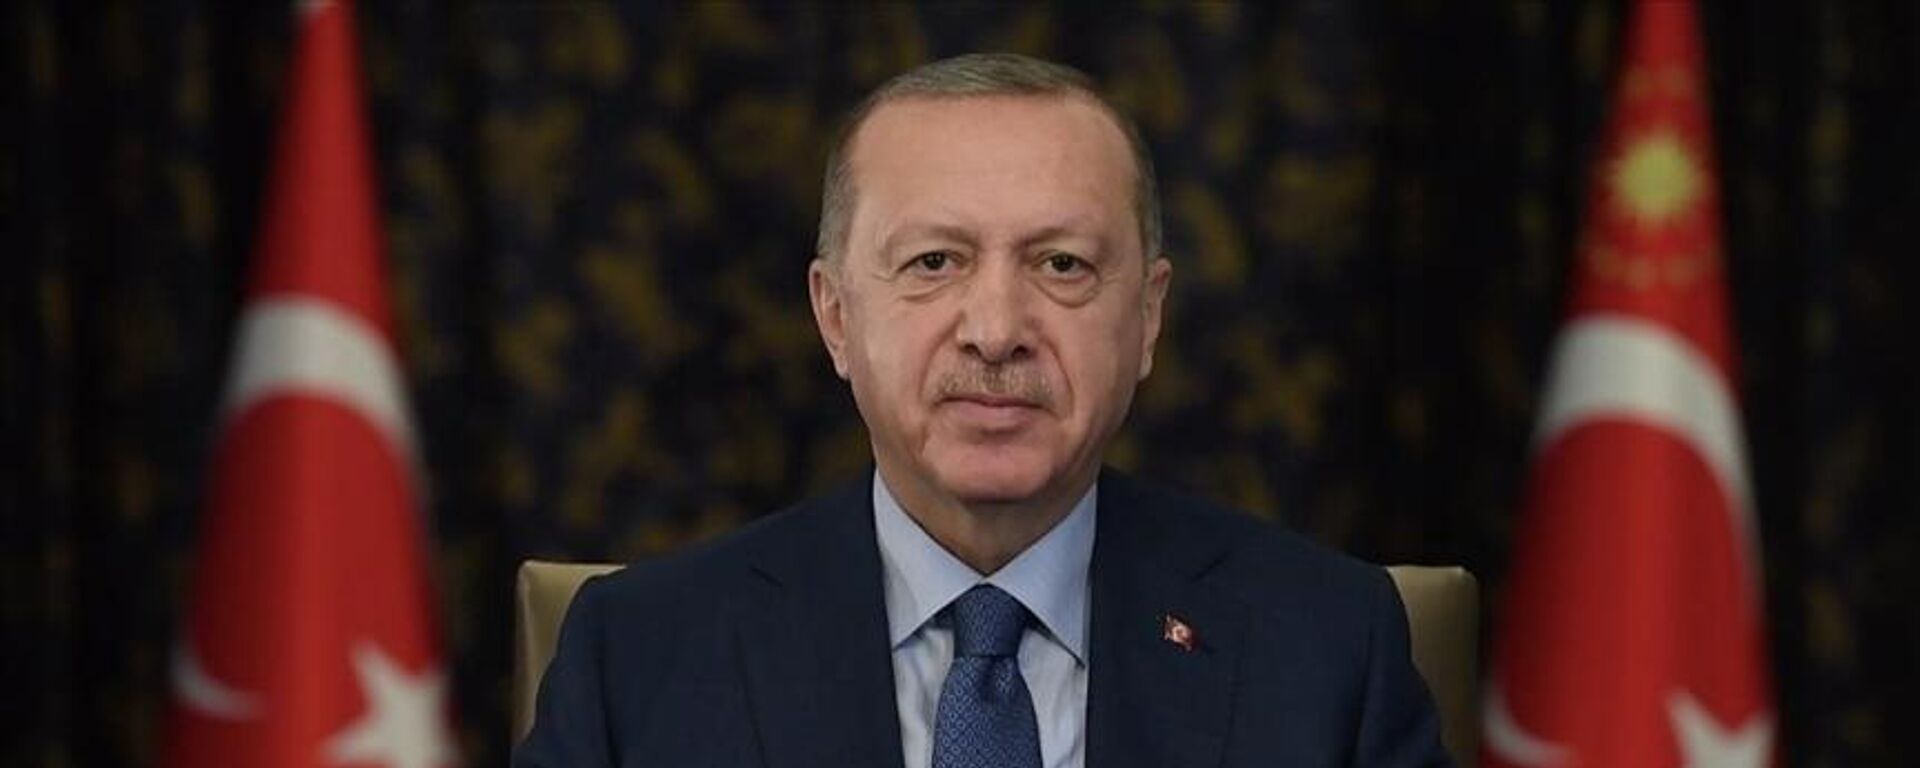 Cumhurbaşkanı Erdoğan: Önümüzde büyük ve güçlü Türkiye'yi inşa edeceğimiz bir dönem var - Sputnik Türkiye, 1920, 21.10.2021